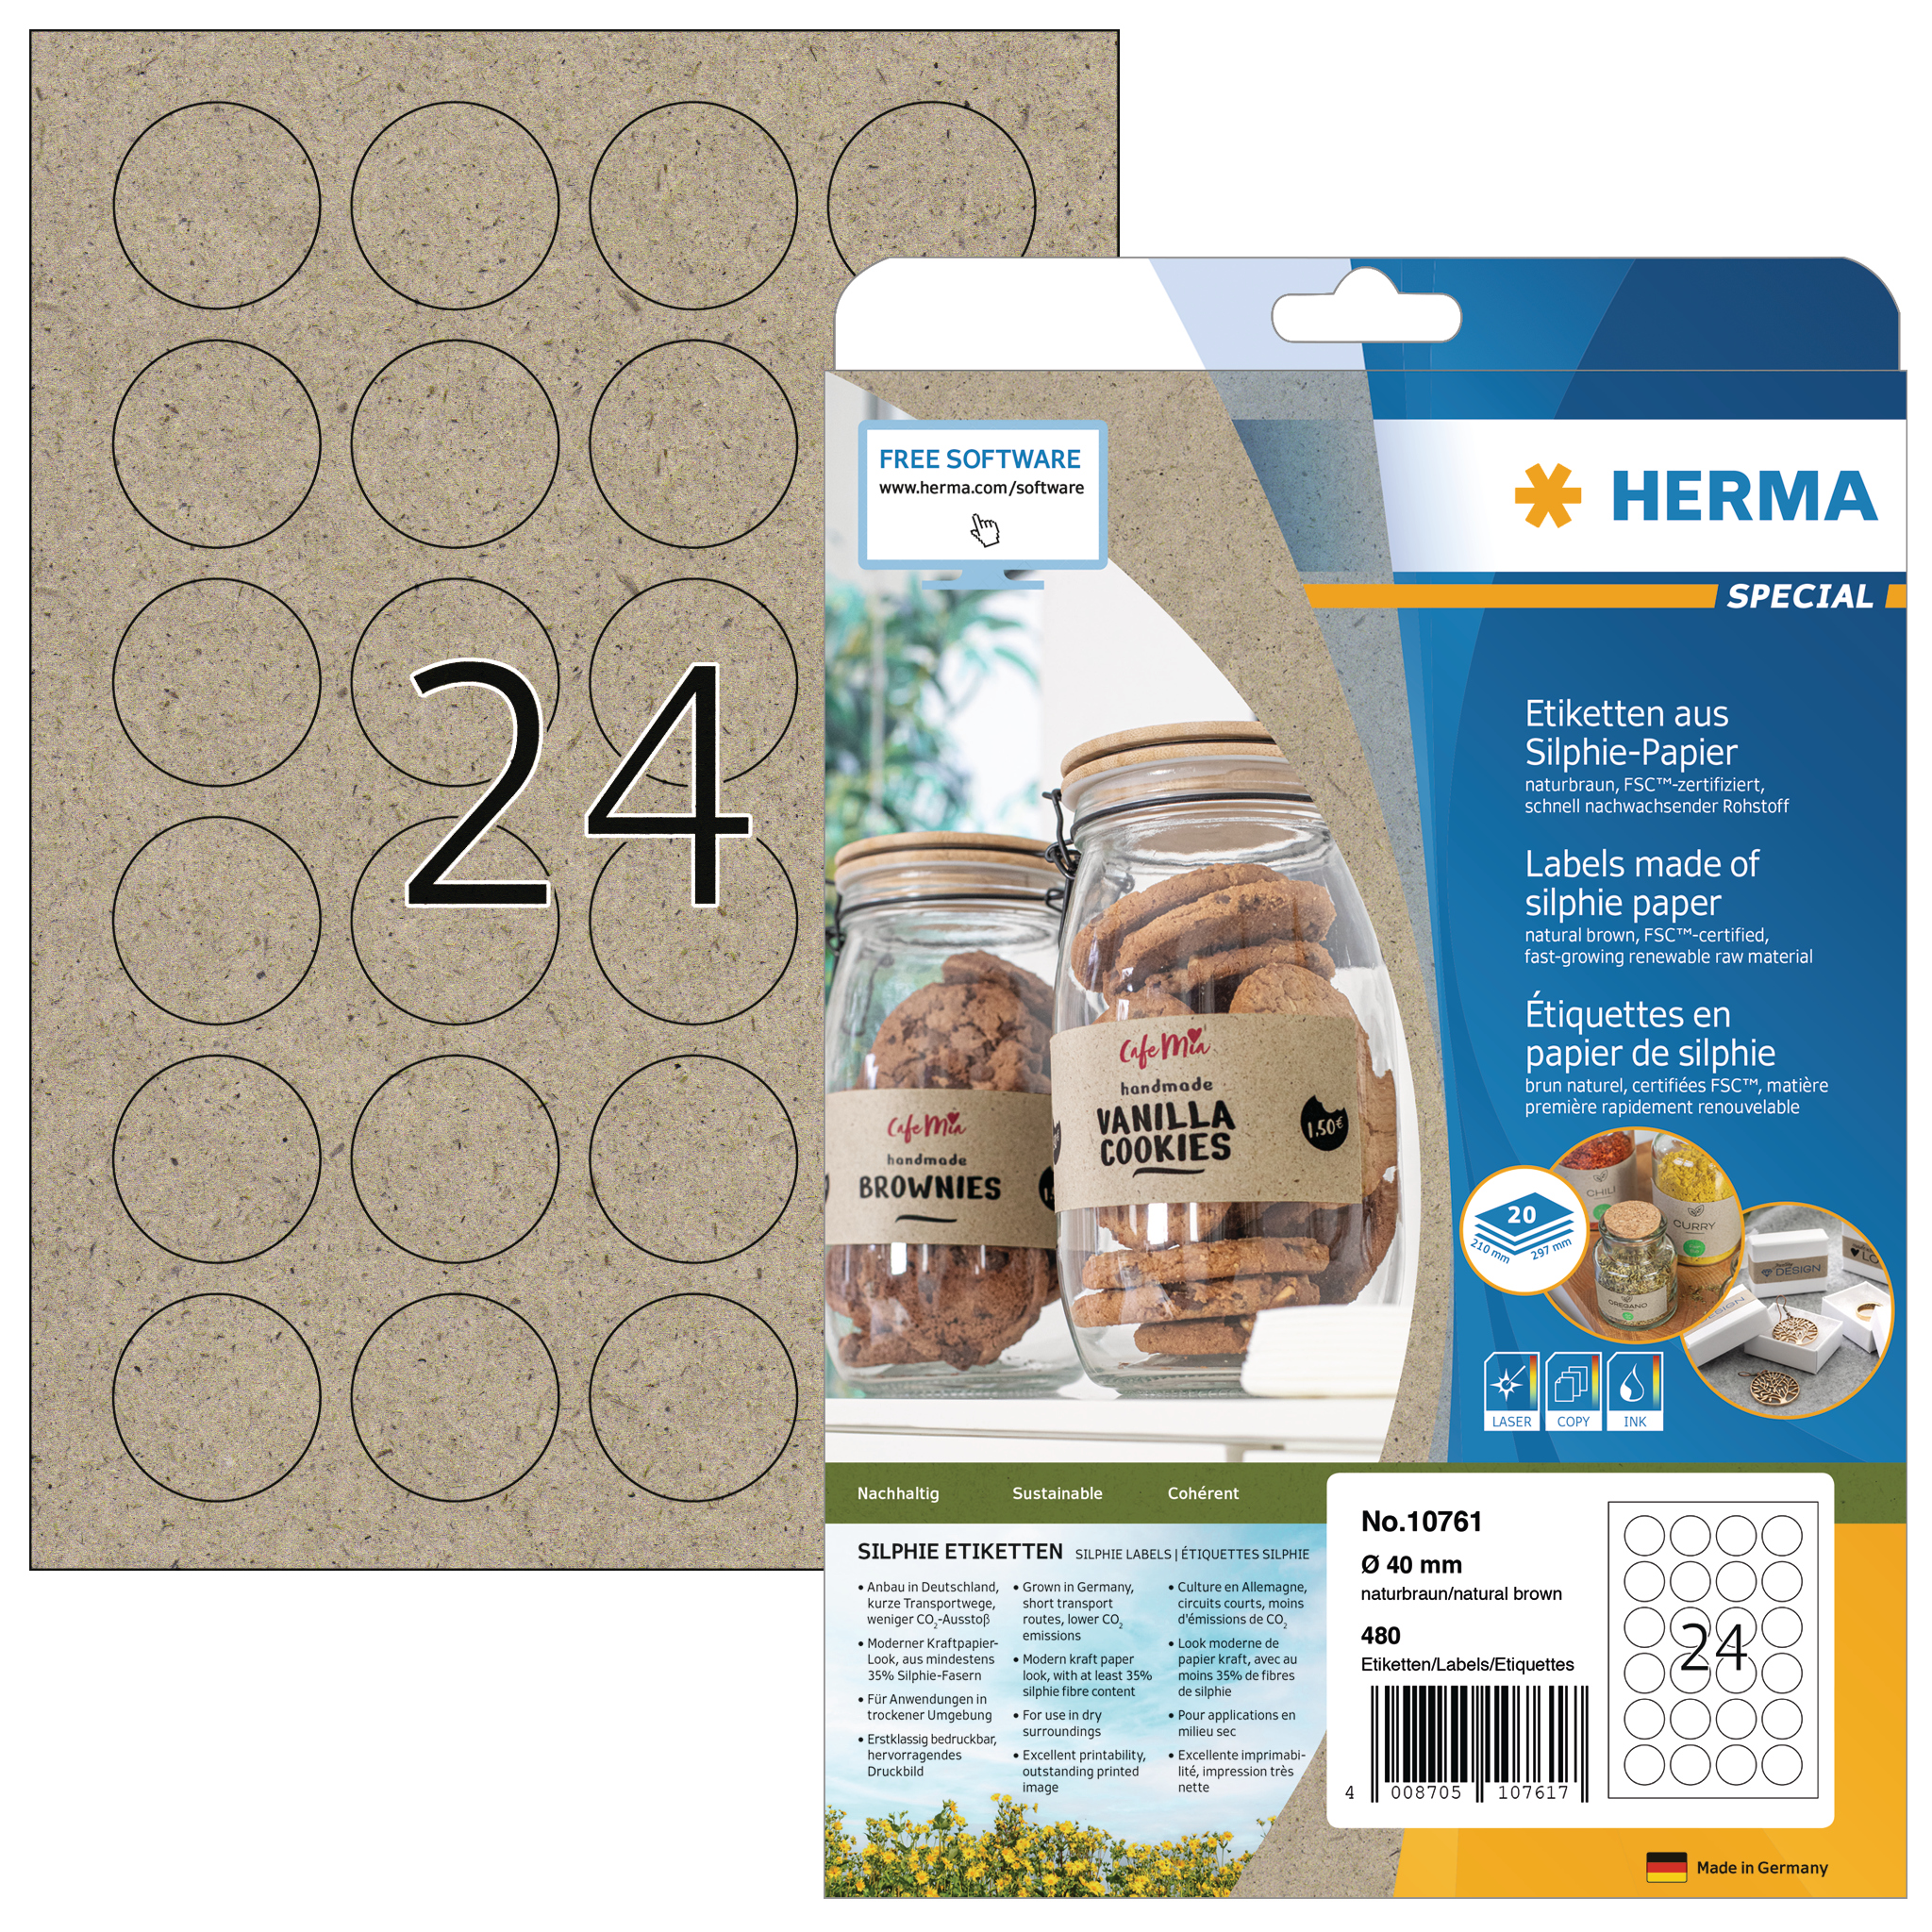 HERMA Étiquettes rond 40 mm 10761 en papier silphie 480 pcs.